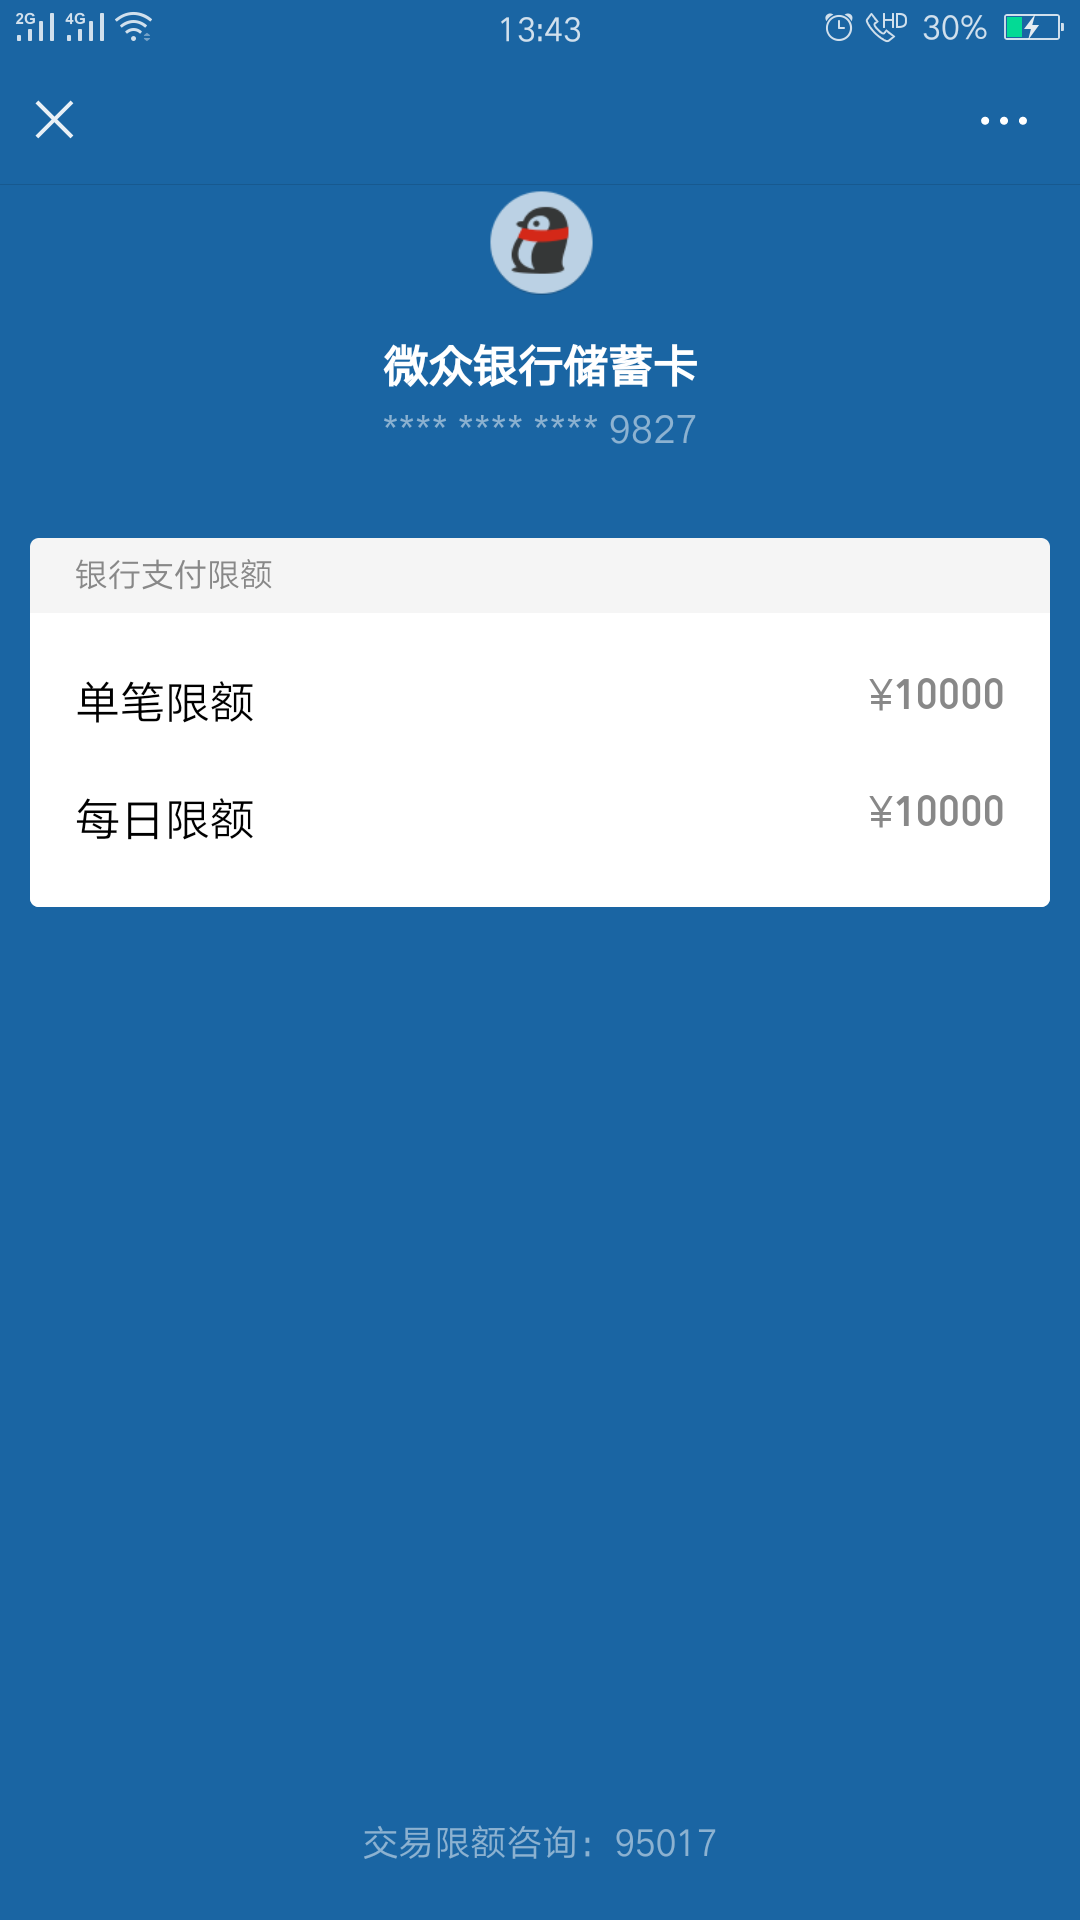 揭秘微众银行首张实体储蓄卡17 / 作者:吊大网神 / 